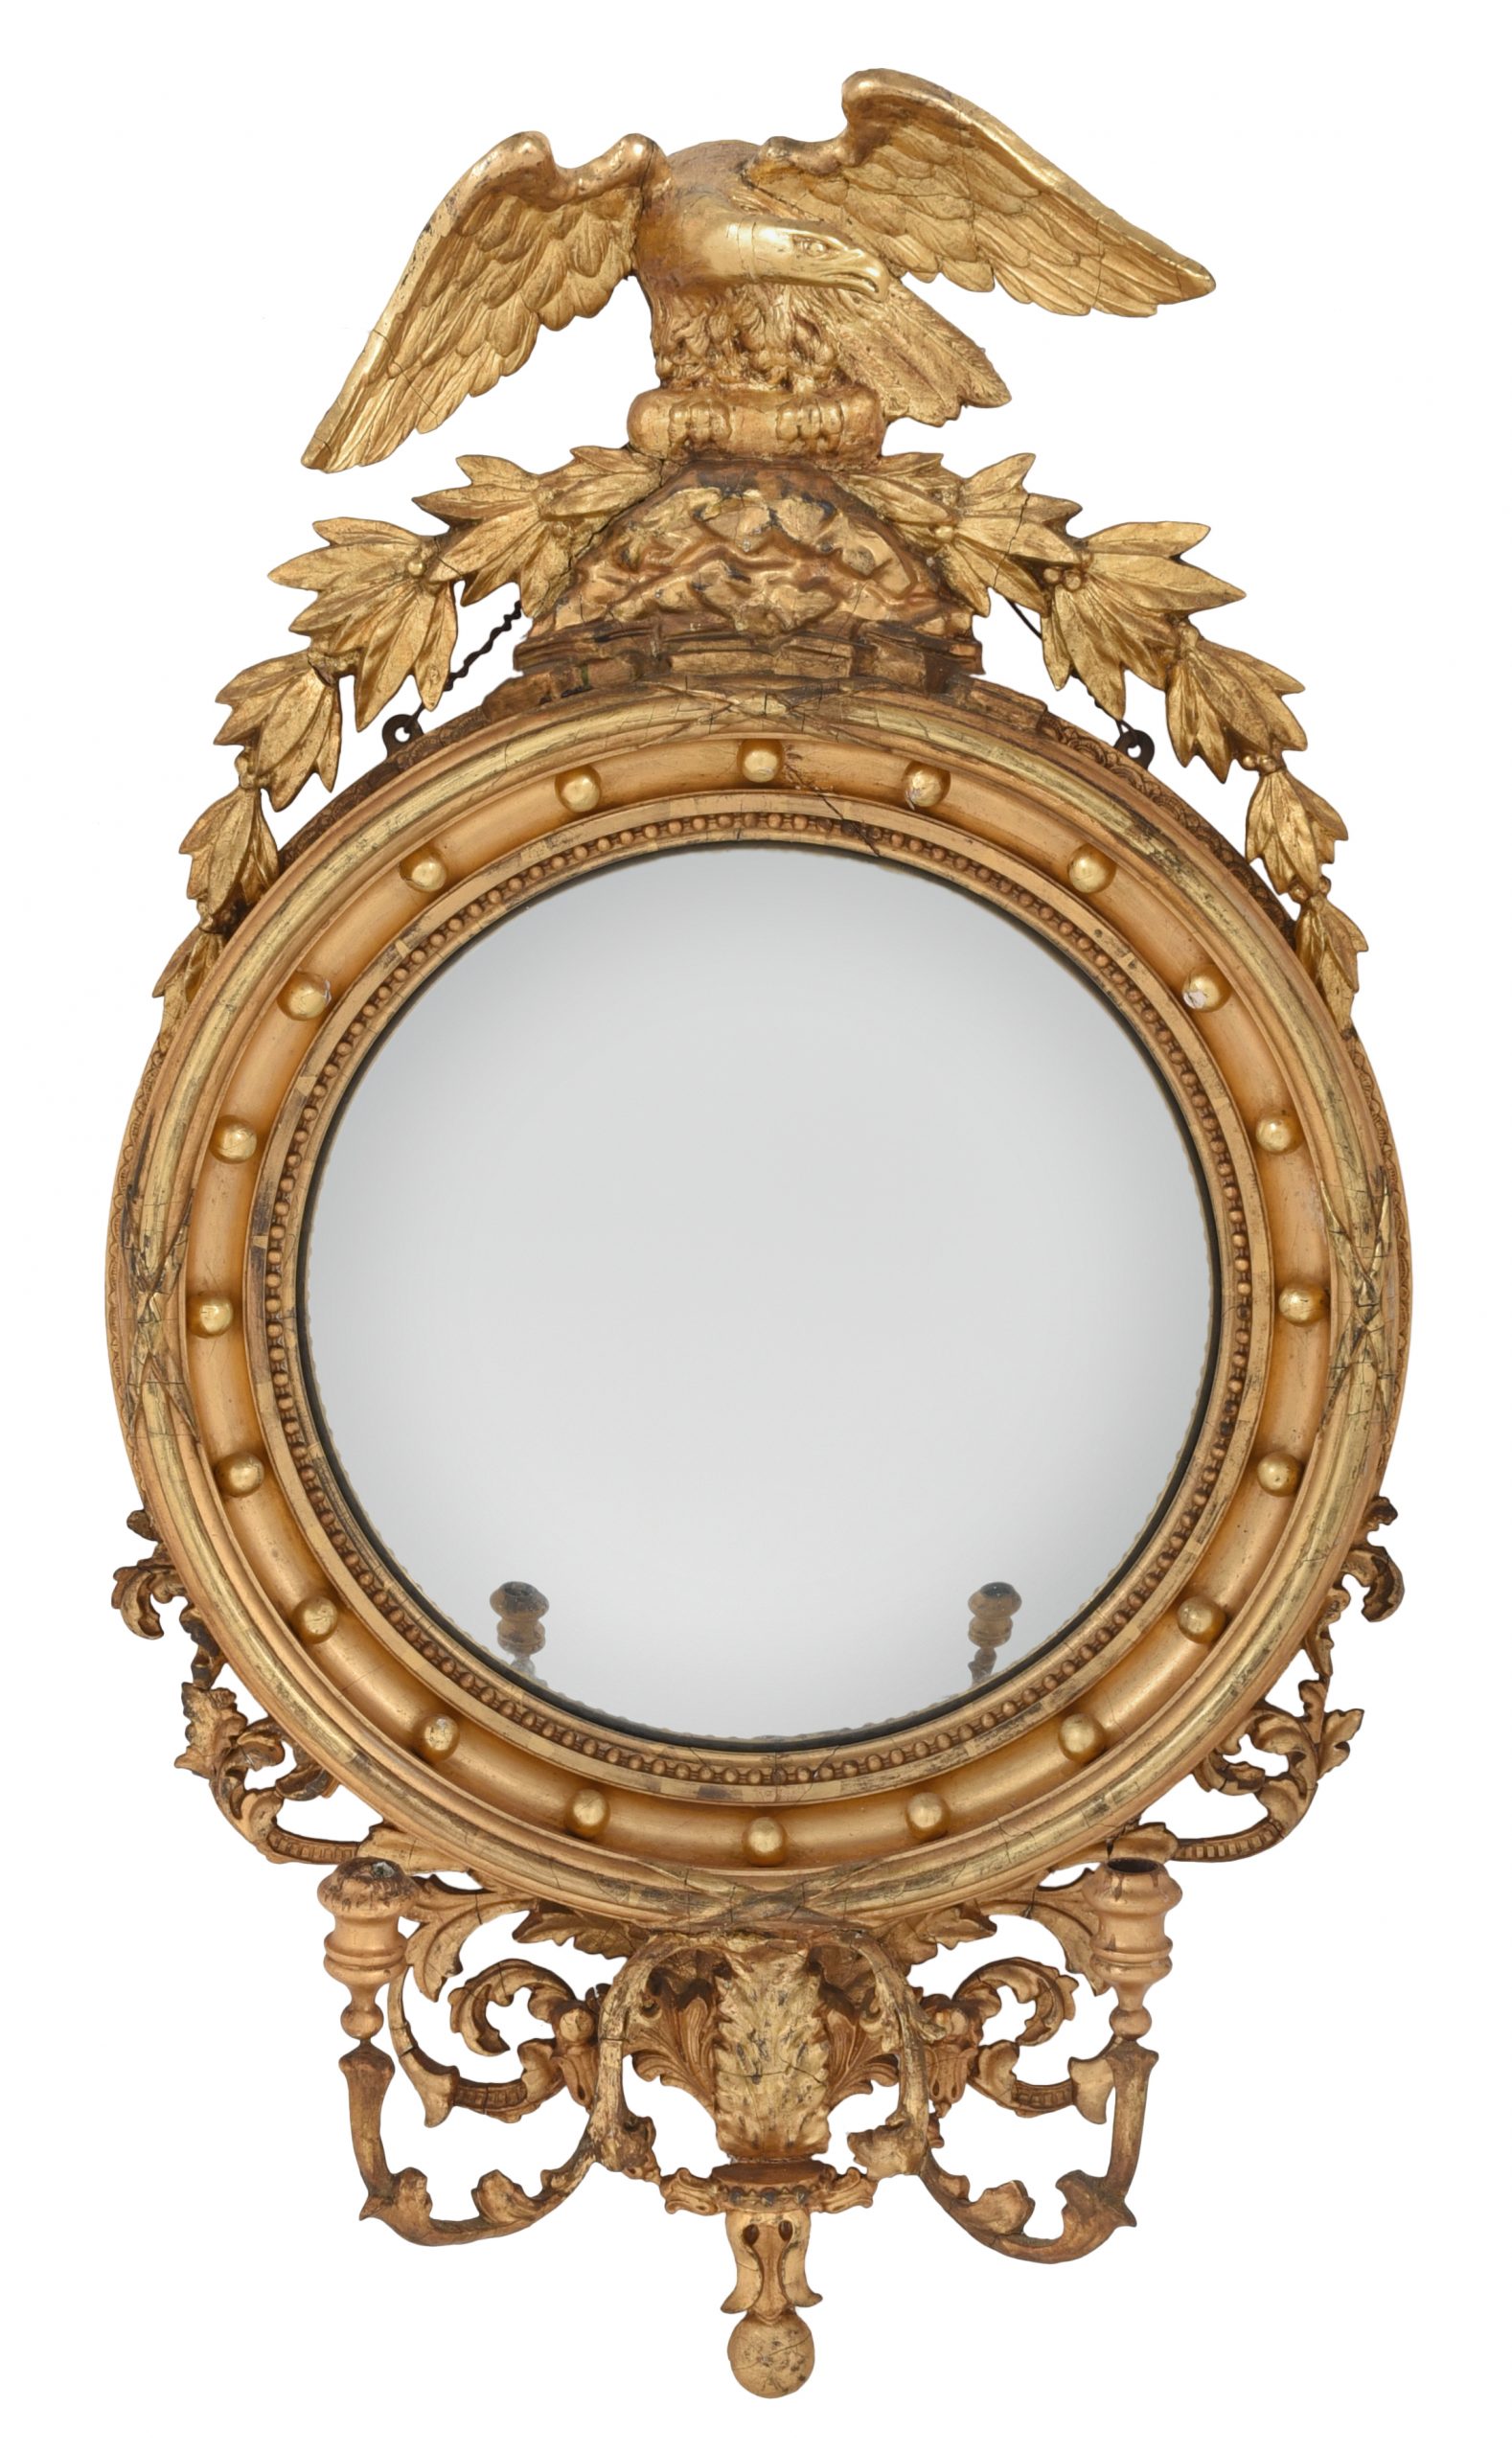 Lot 617 | Classical Giltwood Girandole Mirror</p>
<p>Estimate: $1,200 - $1,800